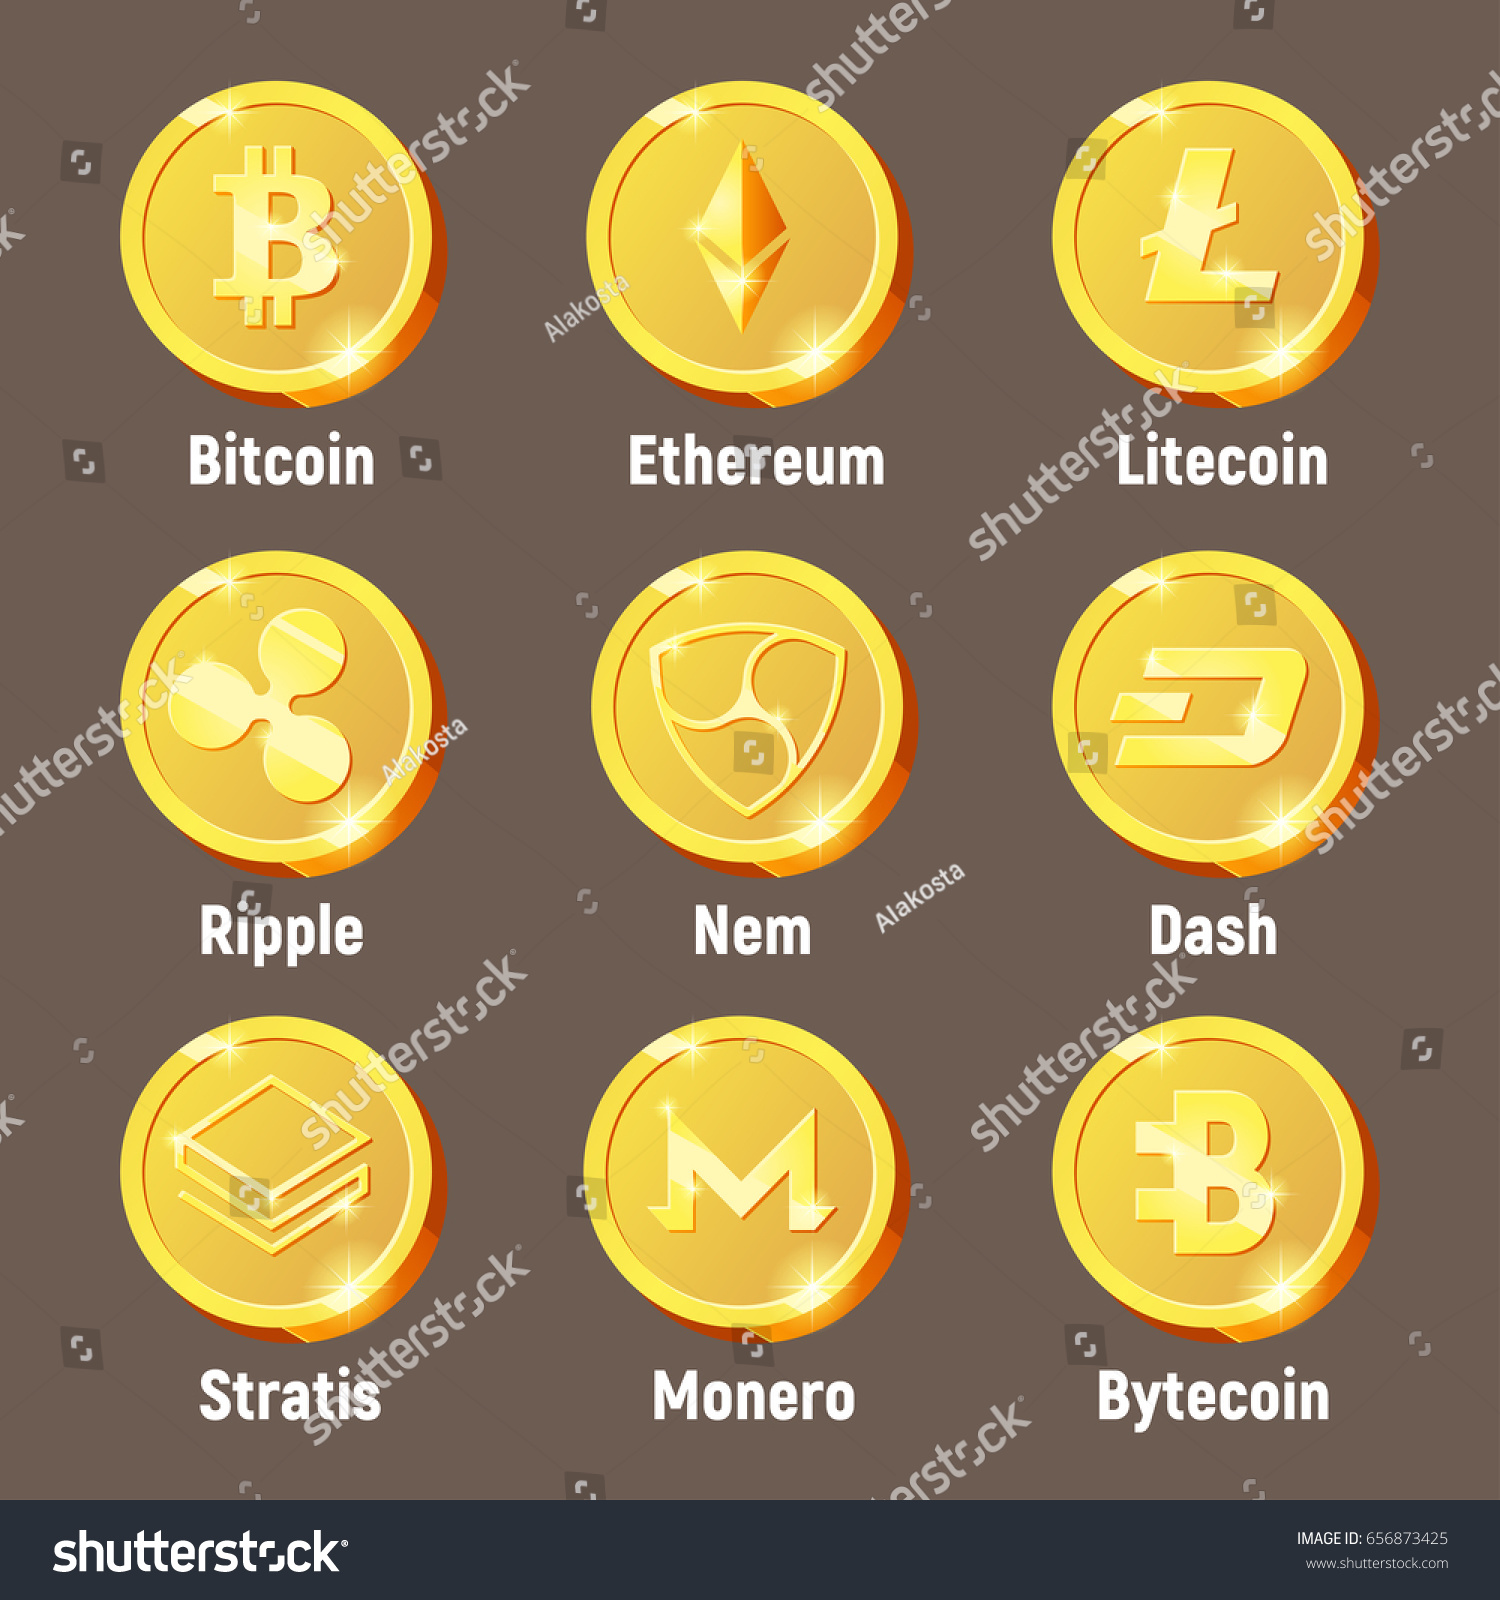 Cripto Currency Logo Coins Monero Bytecoin Stock Vector ...